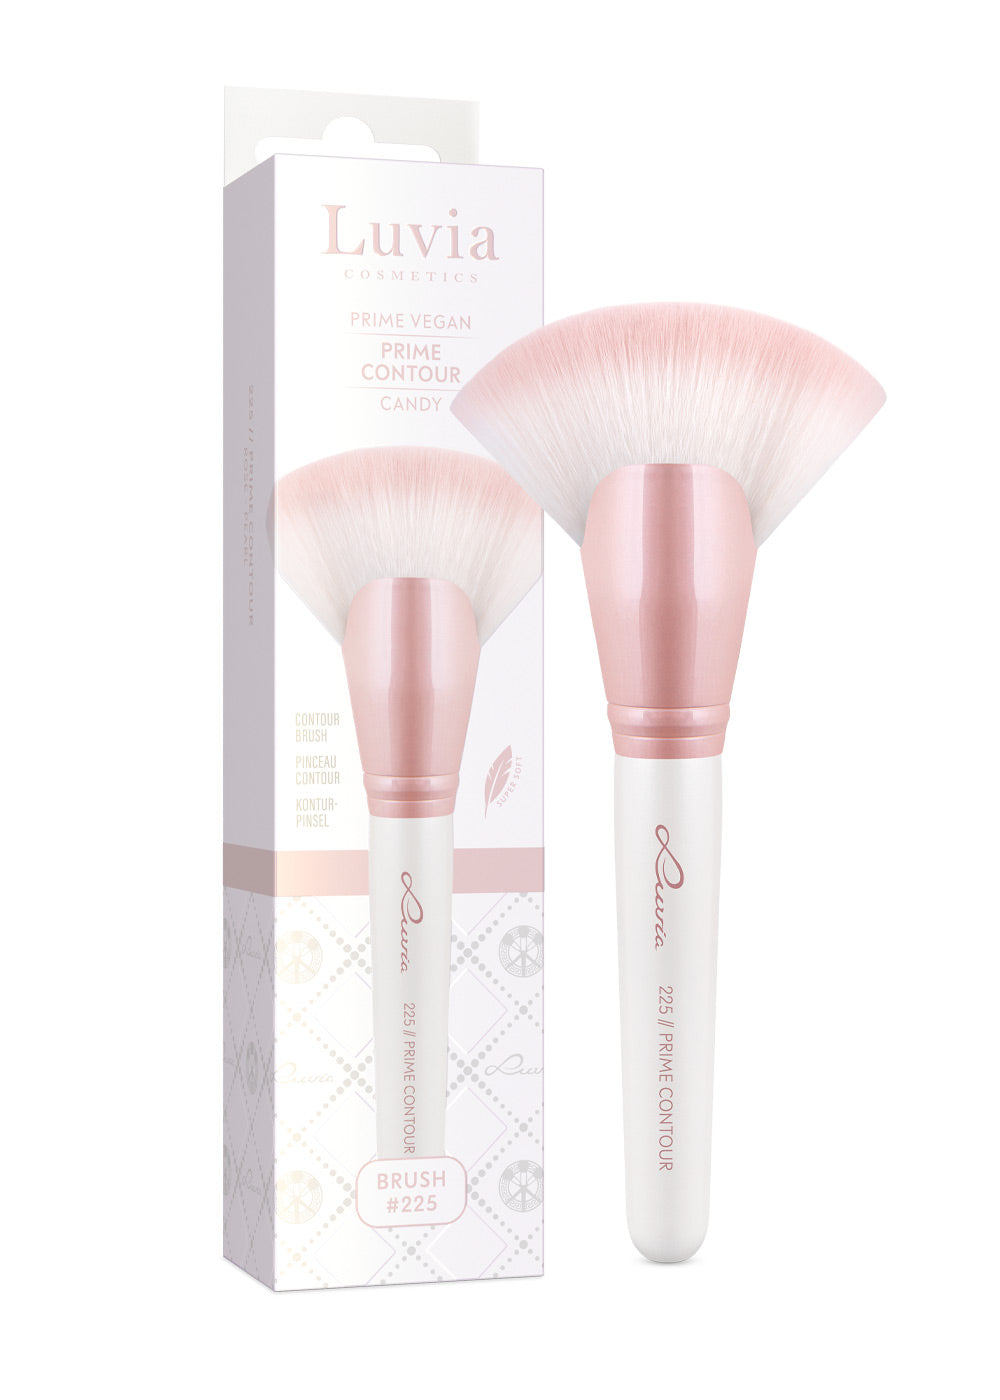 – Brush Prime Contour Luvia Cosmetics